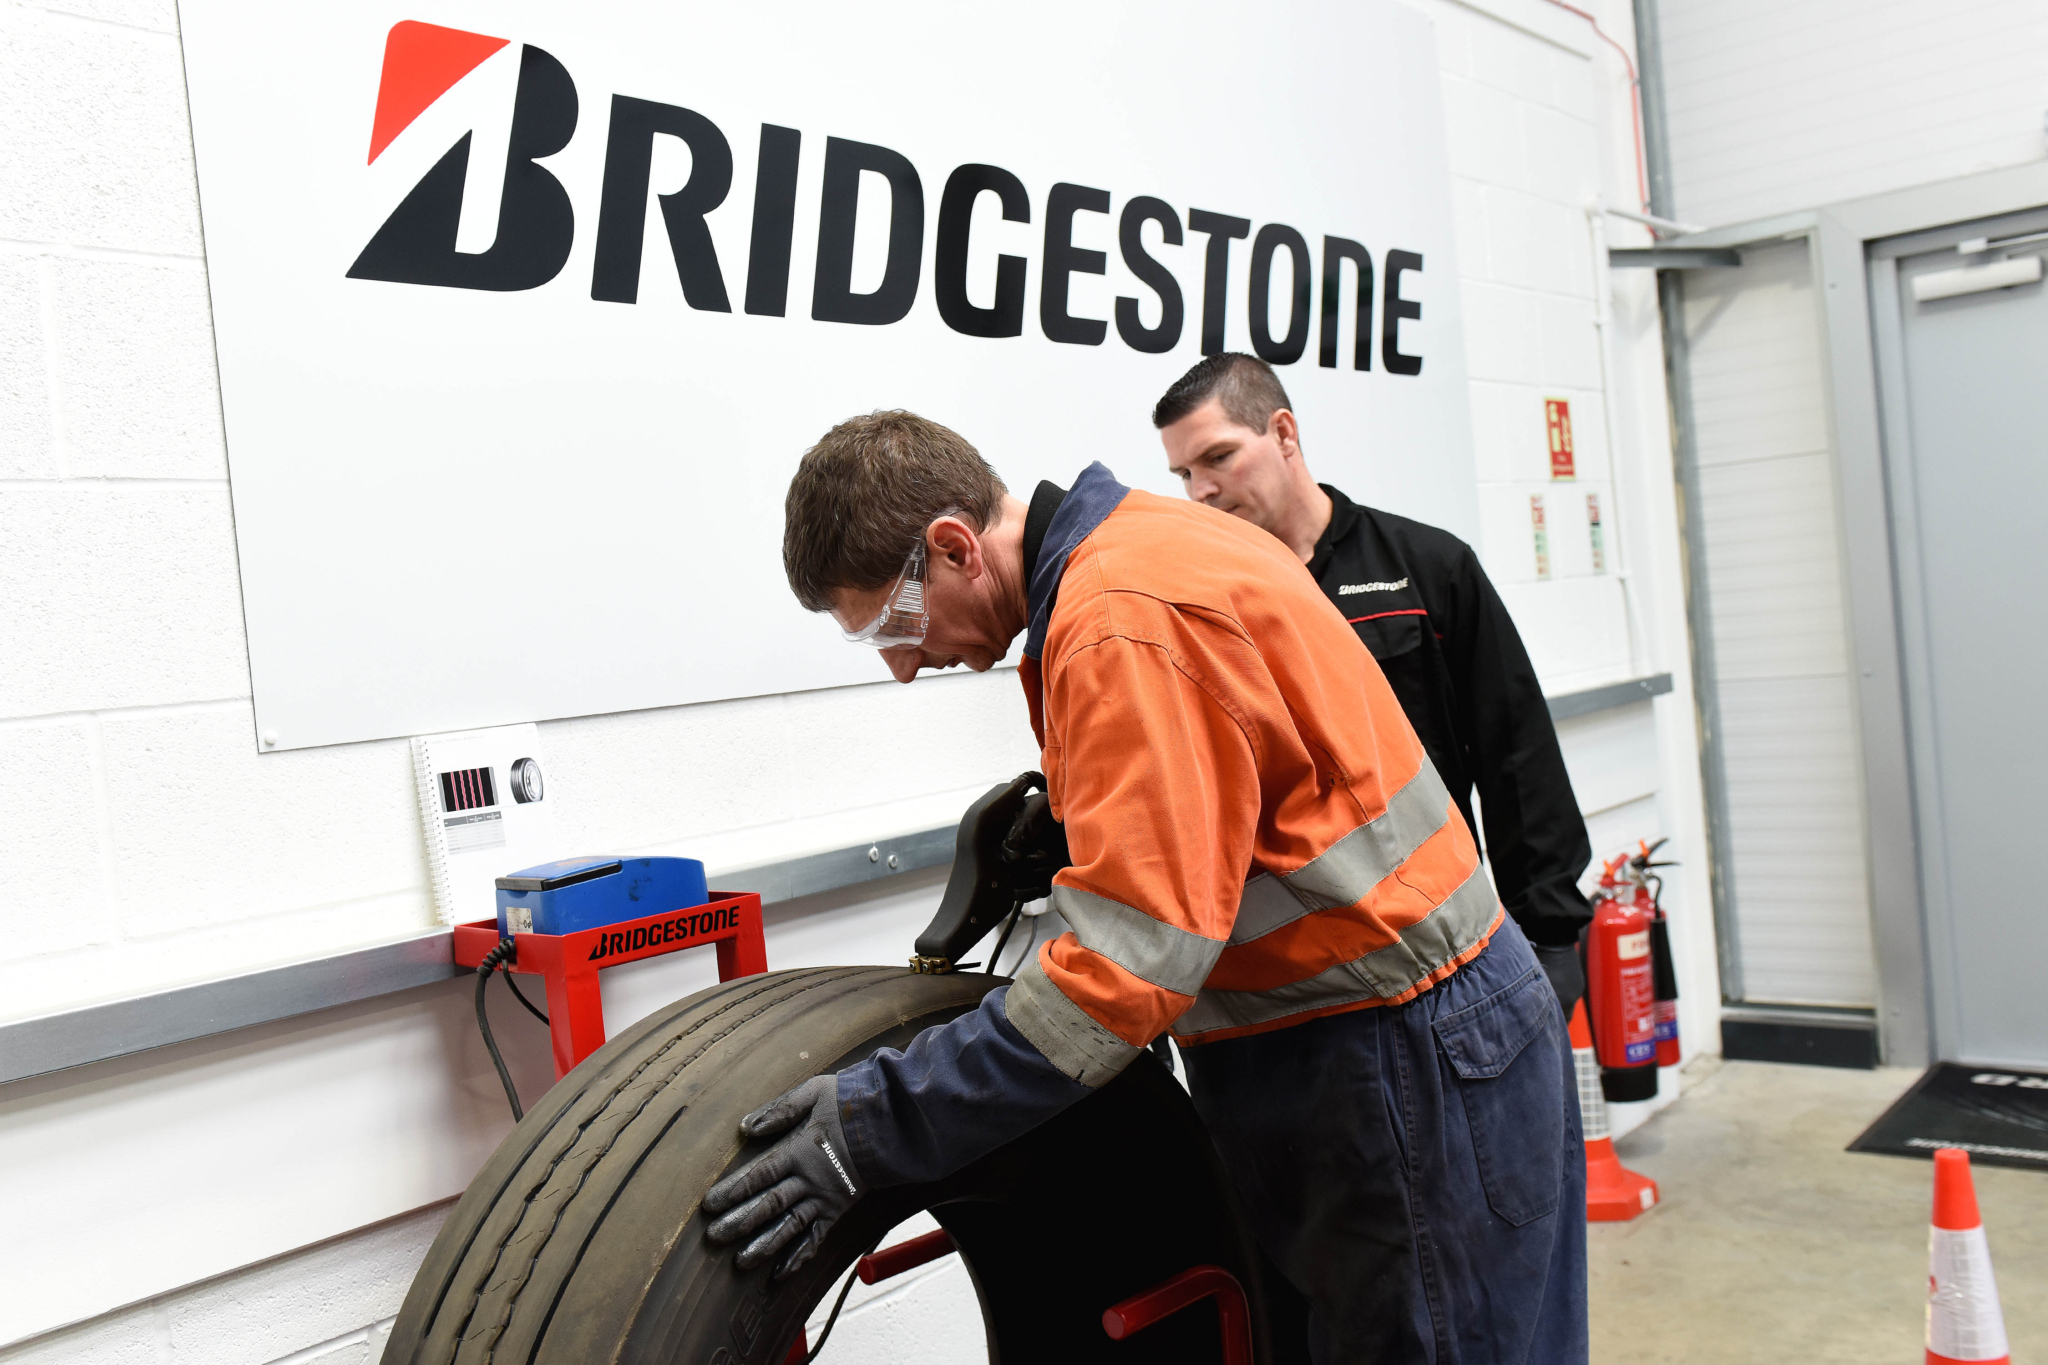 Bridgestone subsidises training to assist customers ramp up post-lockdown